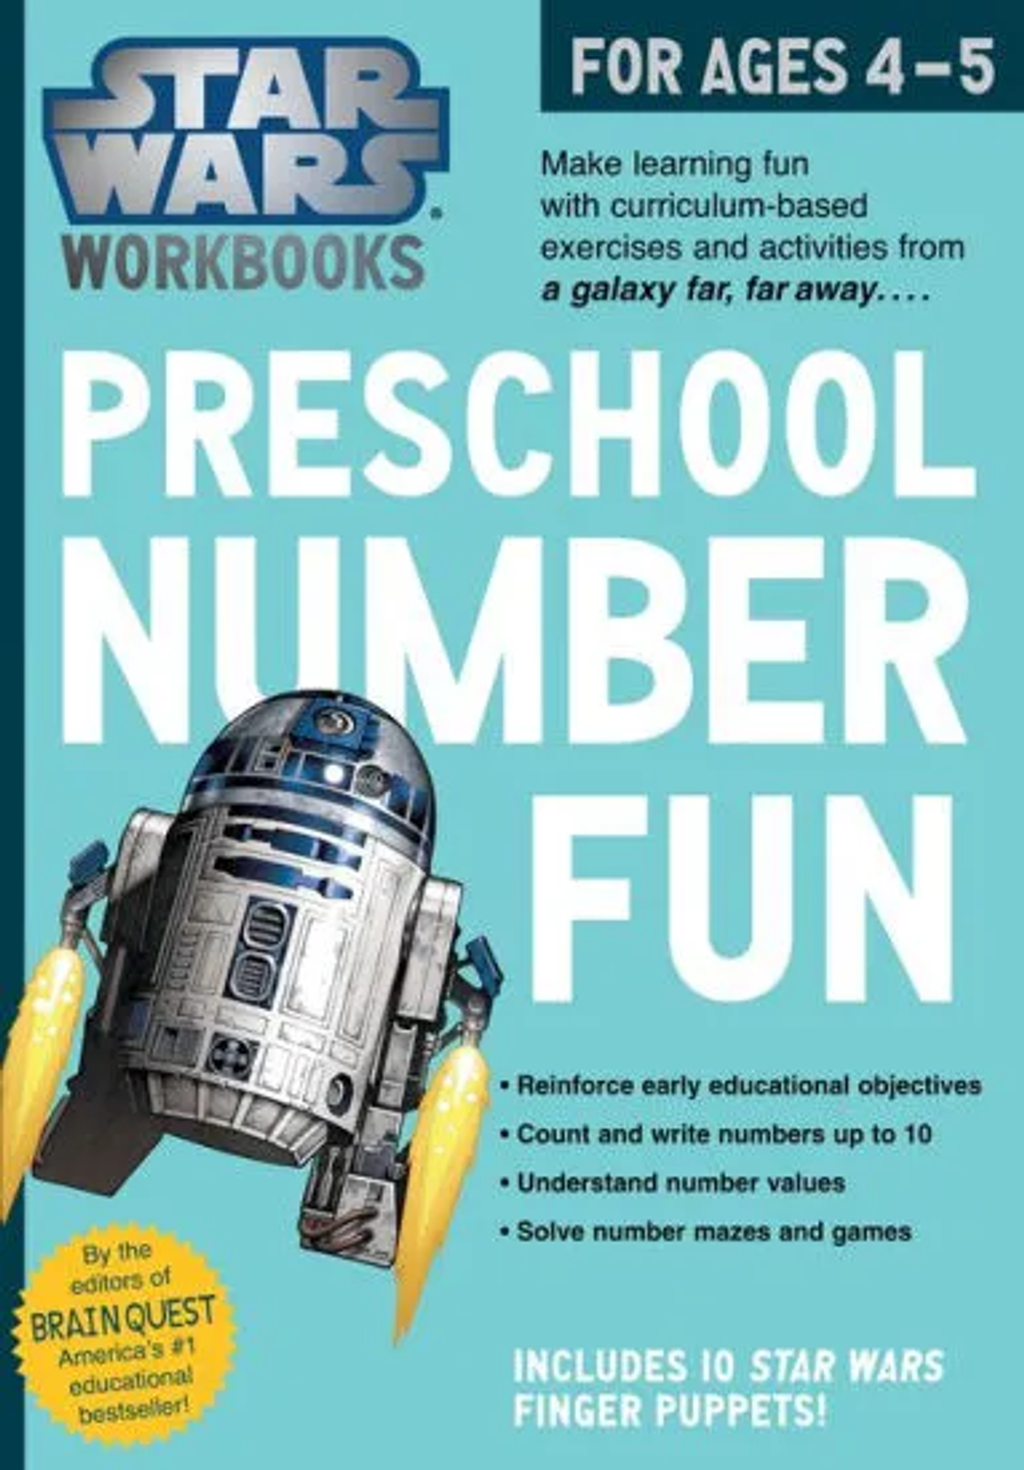 star wars workbooks preschool number fun 1